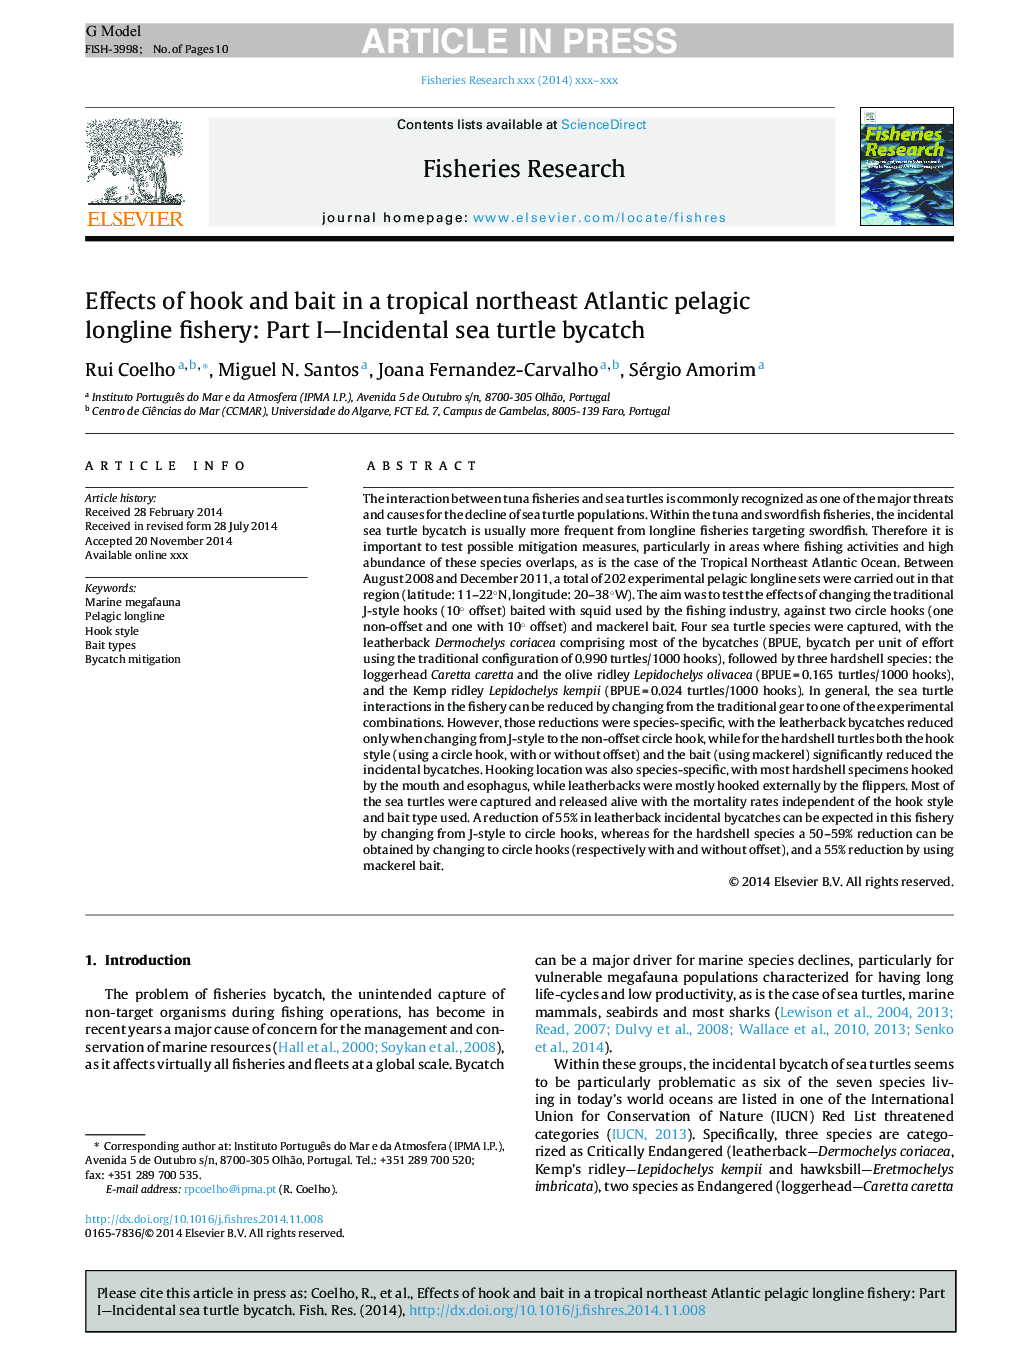 اثرات قلاب و طعمه در یک ماهیگیری دریایی اقیانوس آرام پورتال شمال شرقی مناطق گرمسیری: بخش اول - دریایی لاک پشت دریایی ناگهانی 